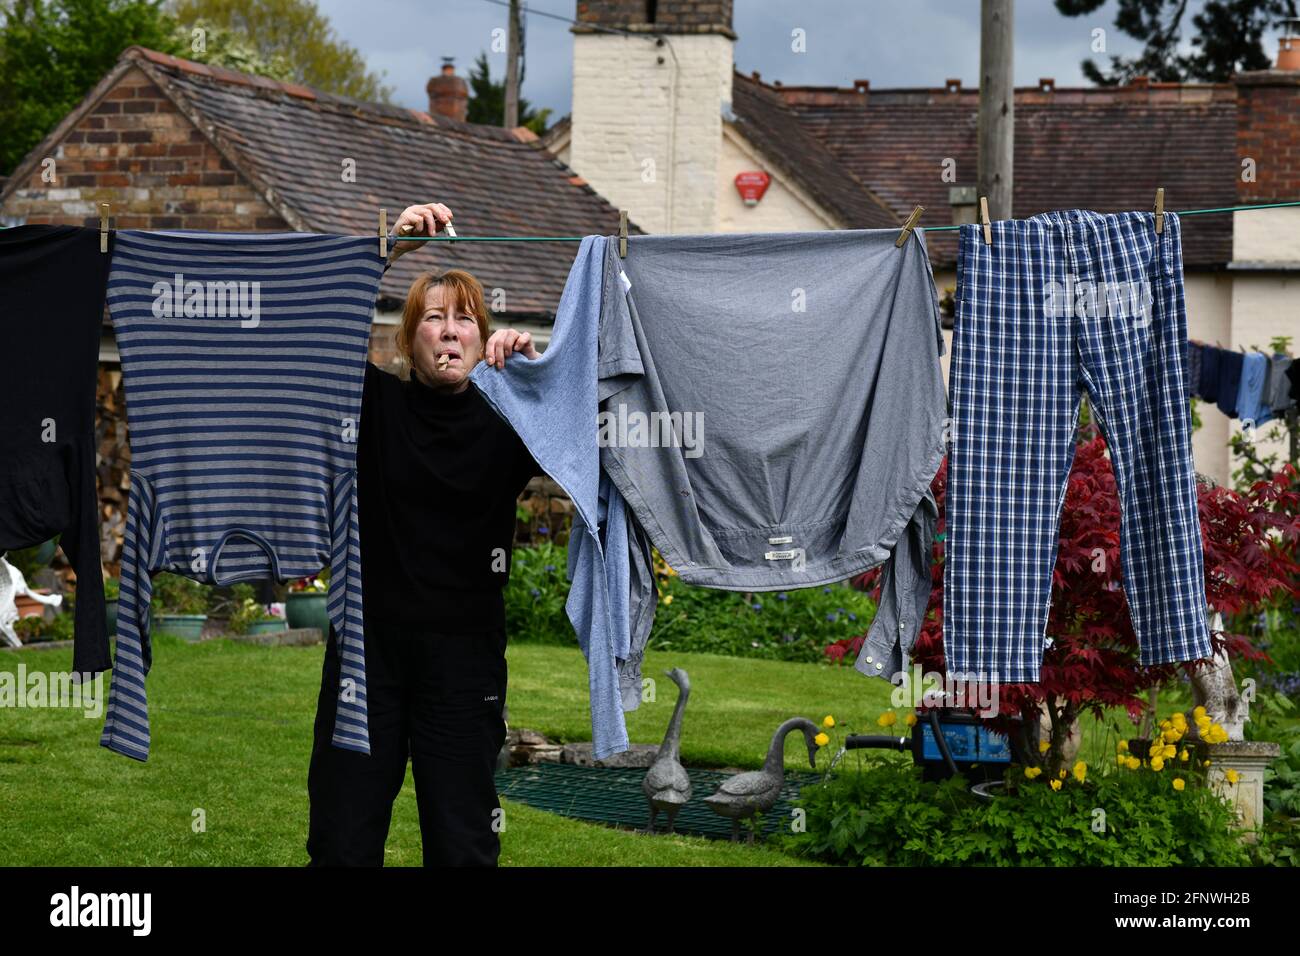 Donna appeso lavaggio su linea di vestiti con i pioli nel giardino Gran Bretagna, UK. Che asciuga fuori casa chores lavoro donne donne donna donna madre moglie Foto Stock